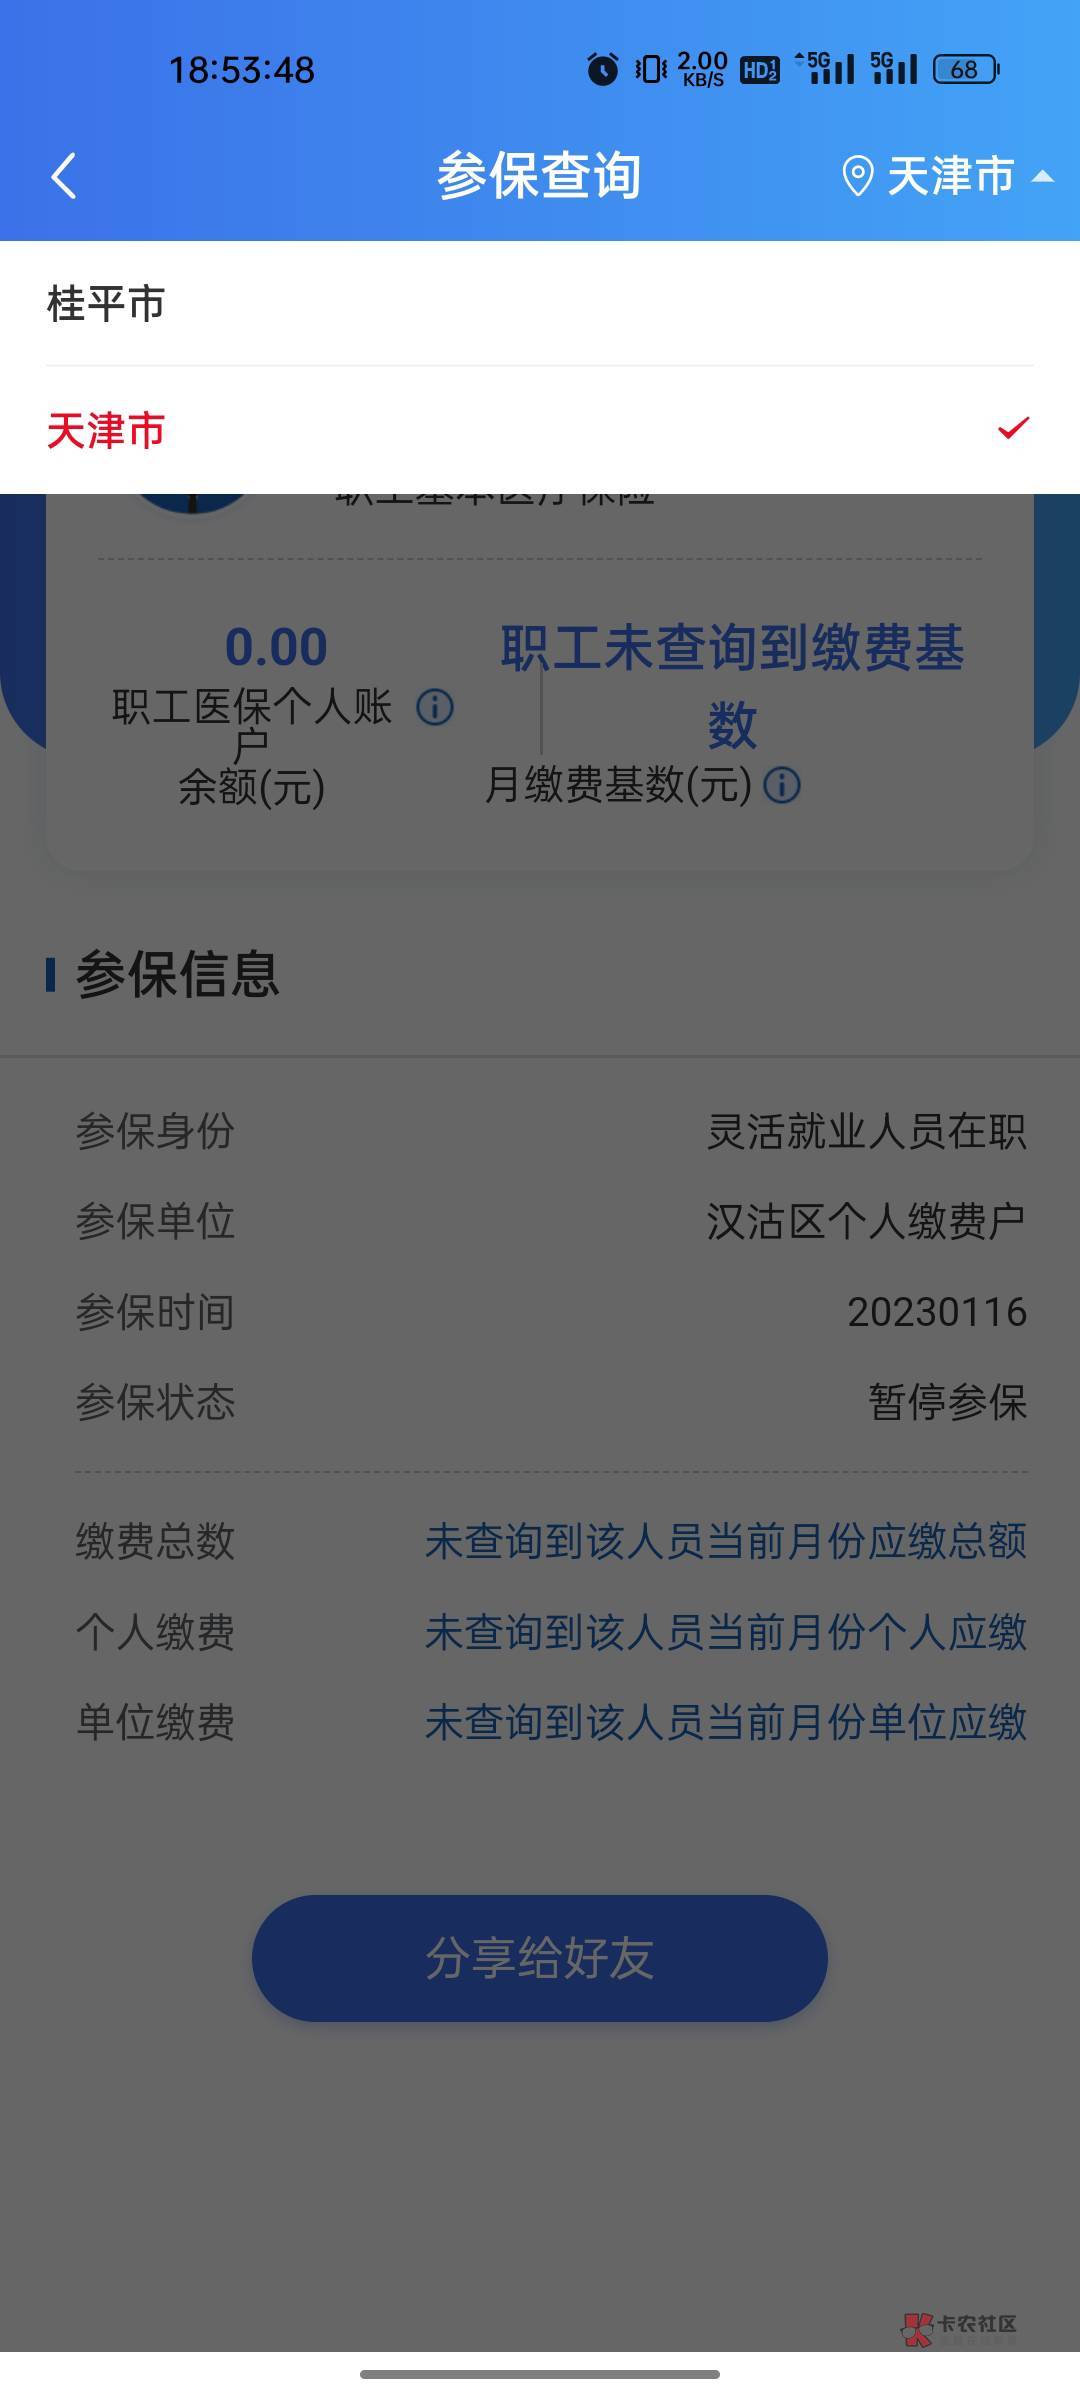 支付宝人社登记广州昨天就通过了，一直不同步，显示还是天津那时候登记的，搞得开不了51 / 作者:修仙者 / 